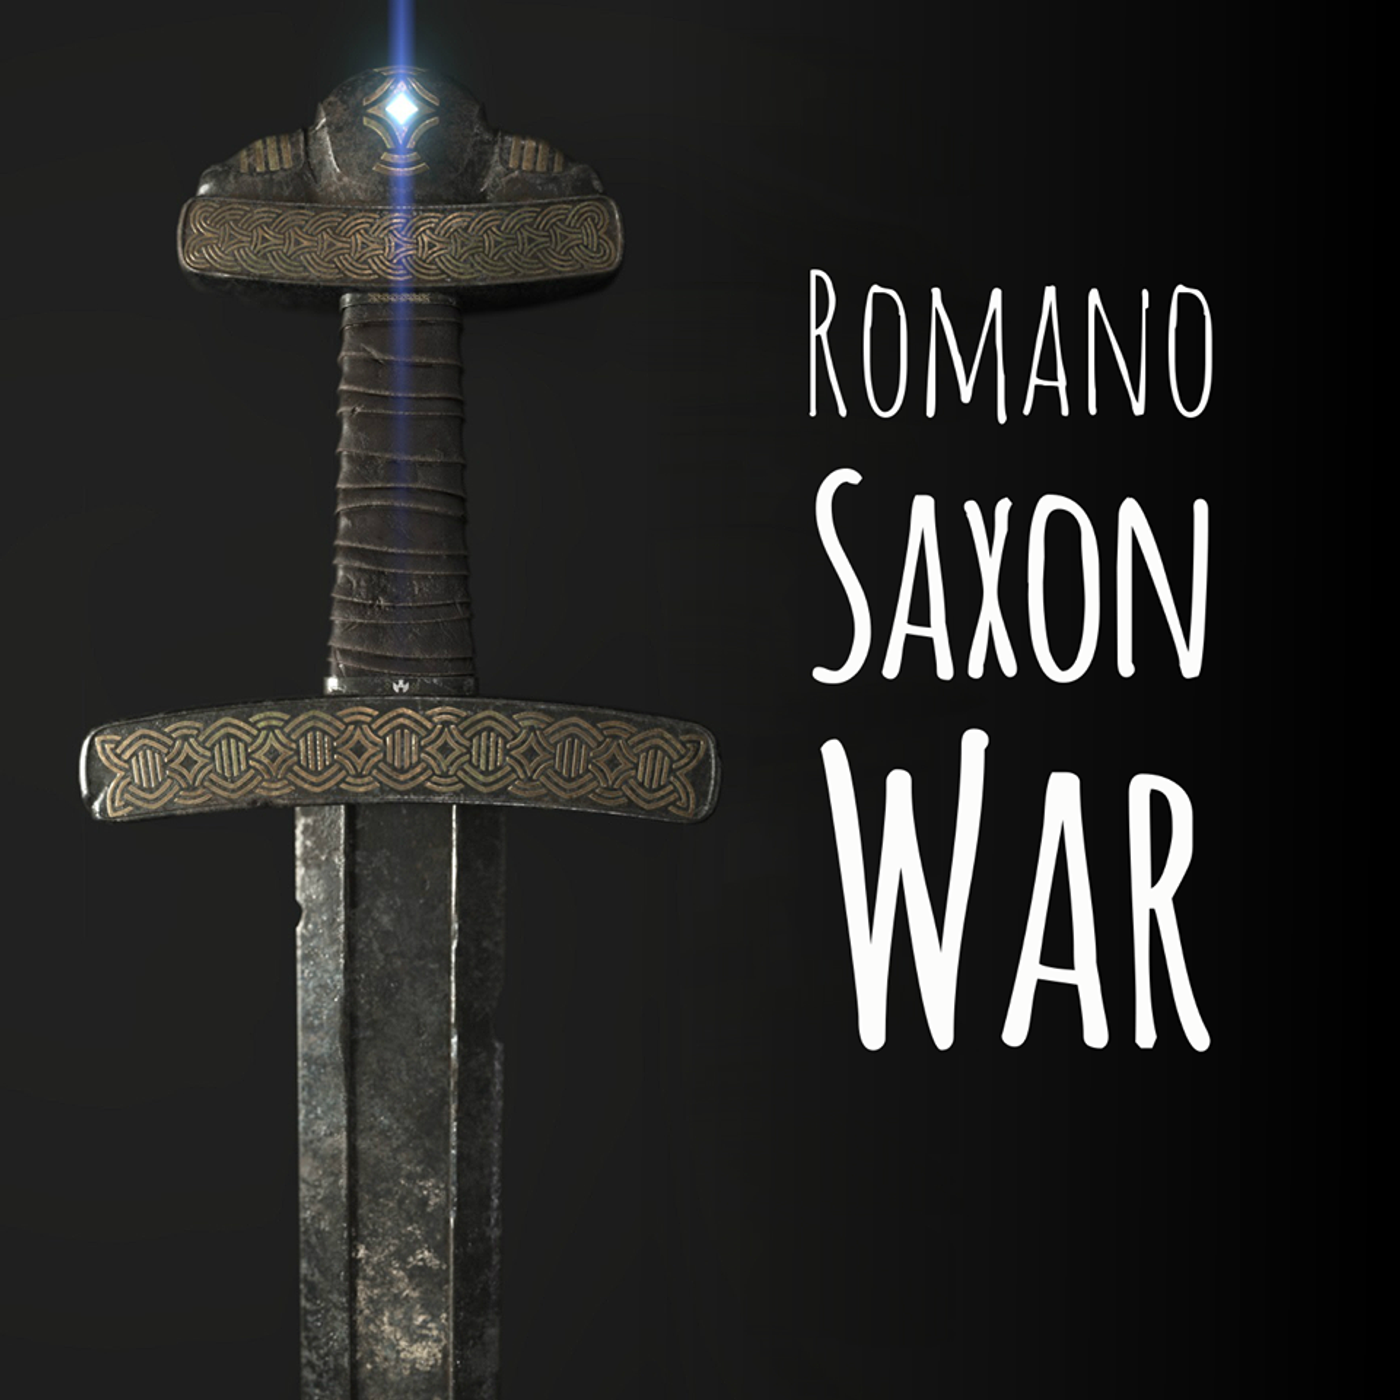 Romano Saxon War, BONUS